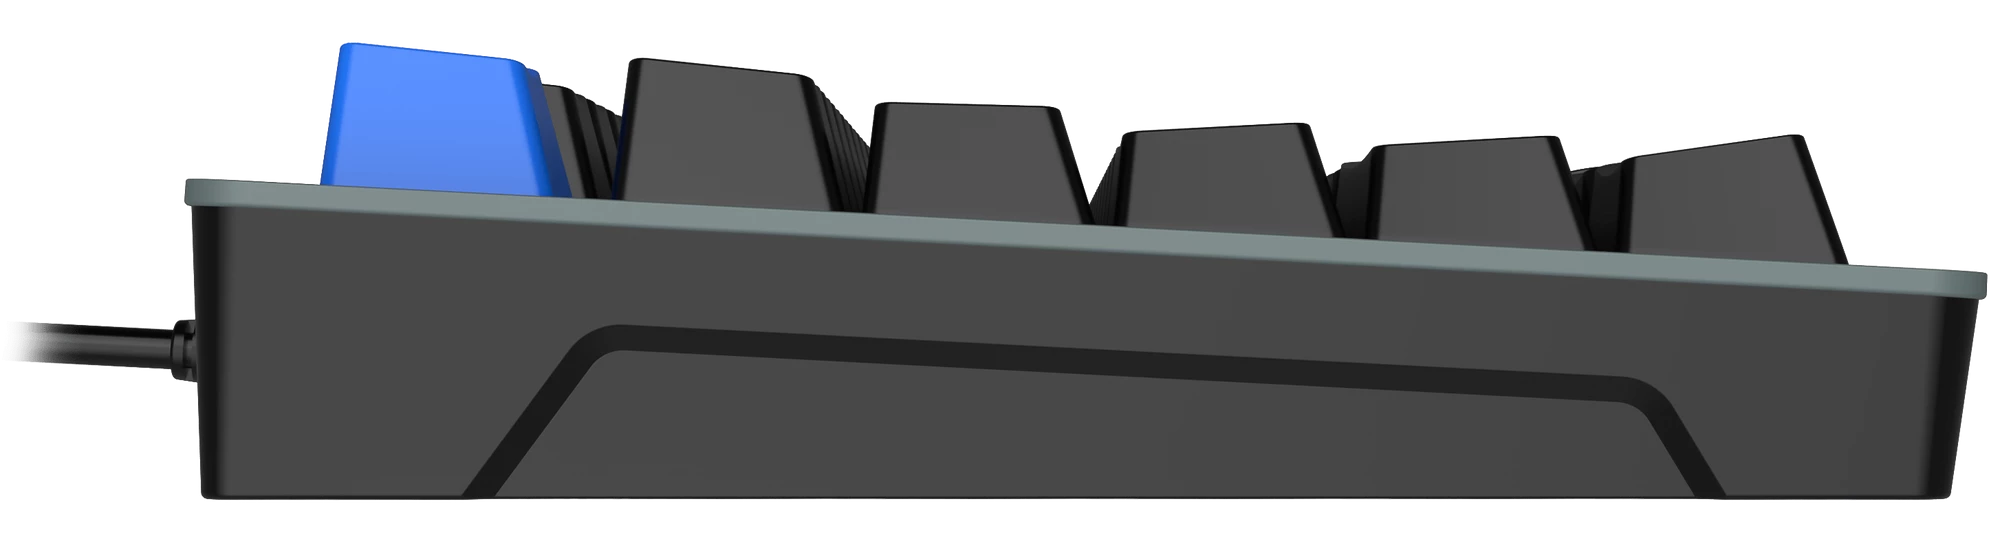 Игровая проводная клавиатура Thunderobot K87R